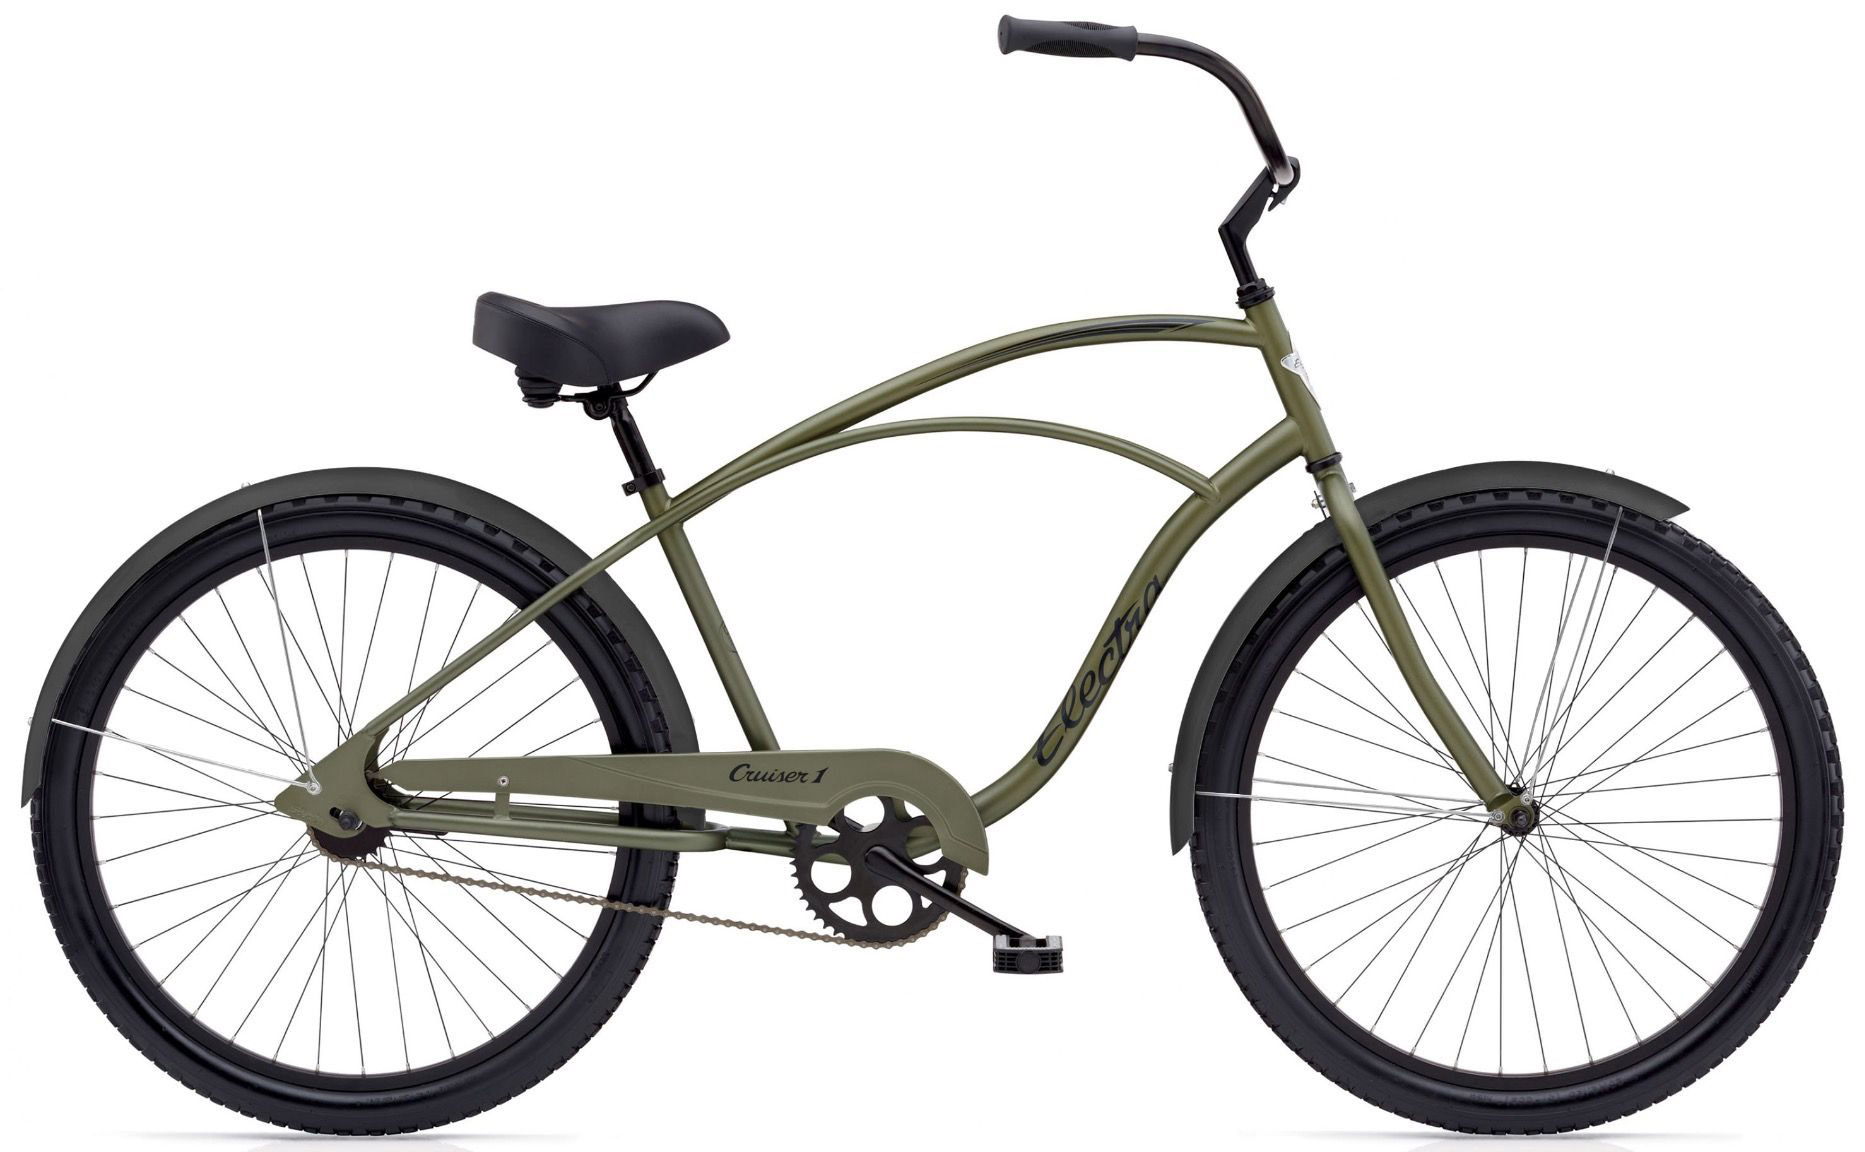  Отзывы о Городском велосипеде Electra Cruiser 1 Mens 2020